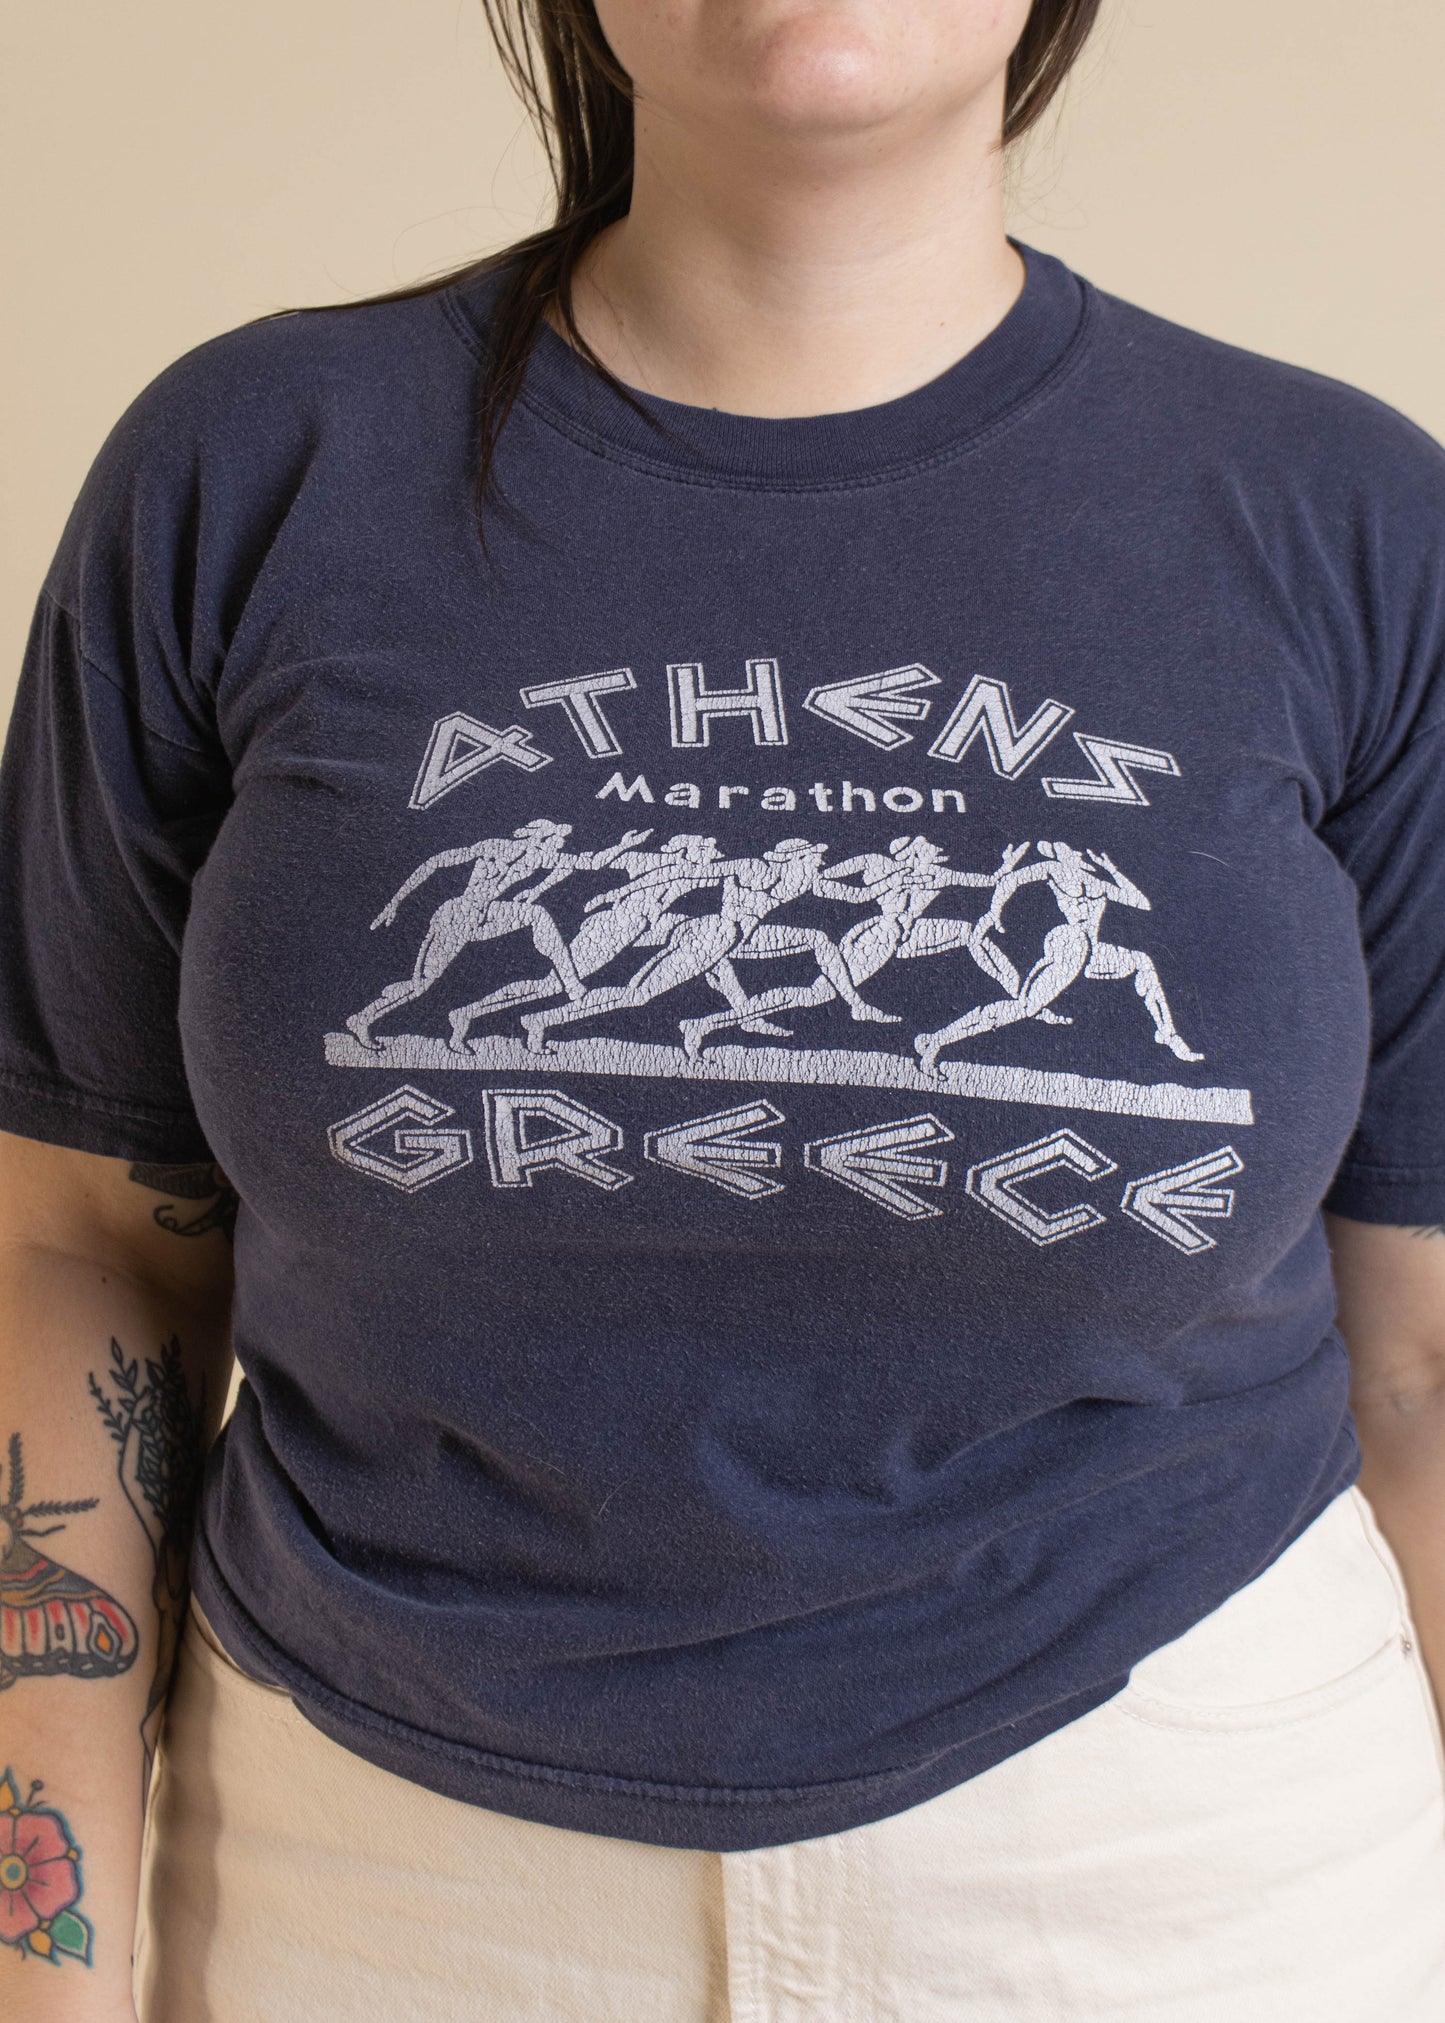 1980s Athens Marathon Souvenir T-Shirt Size M/L